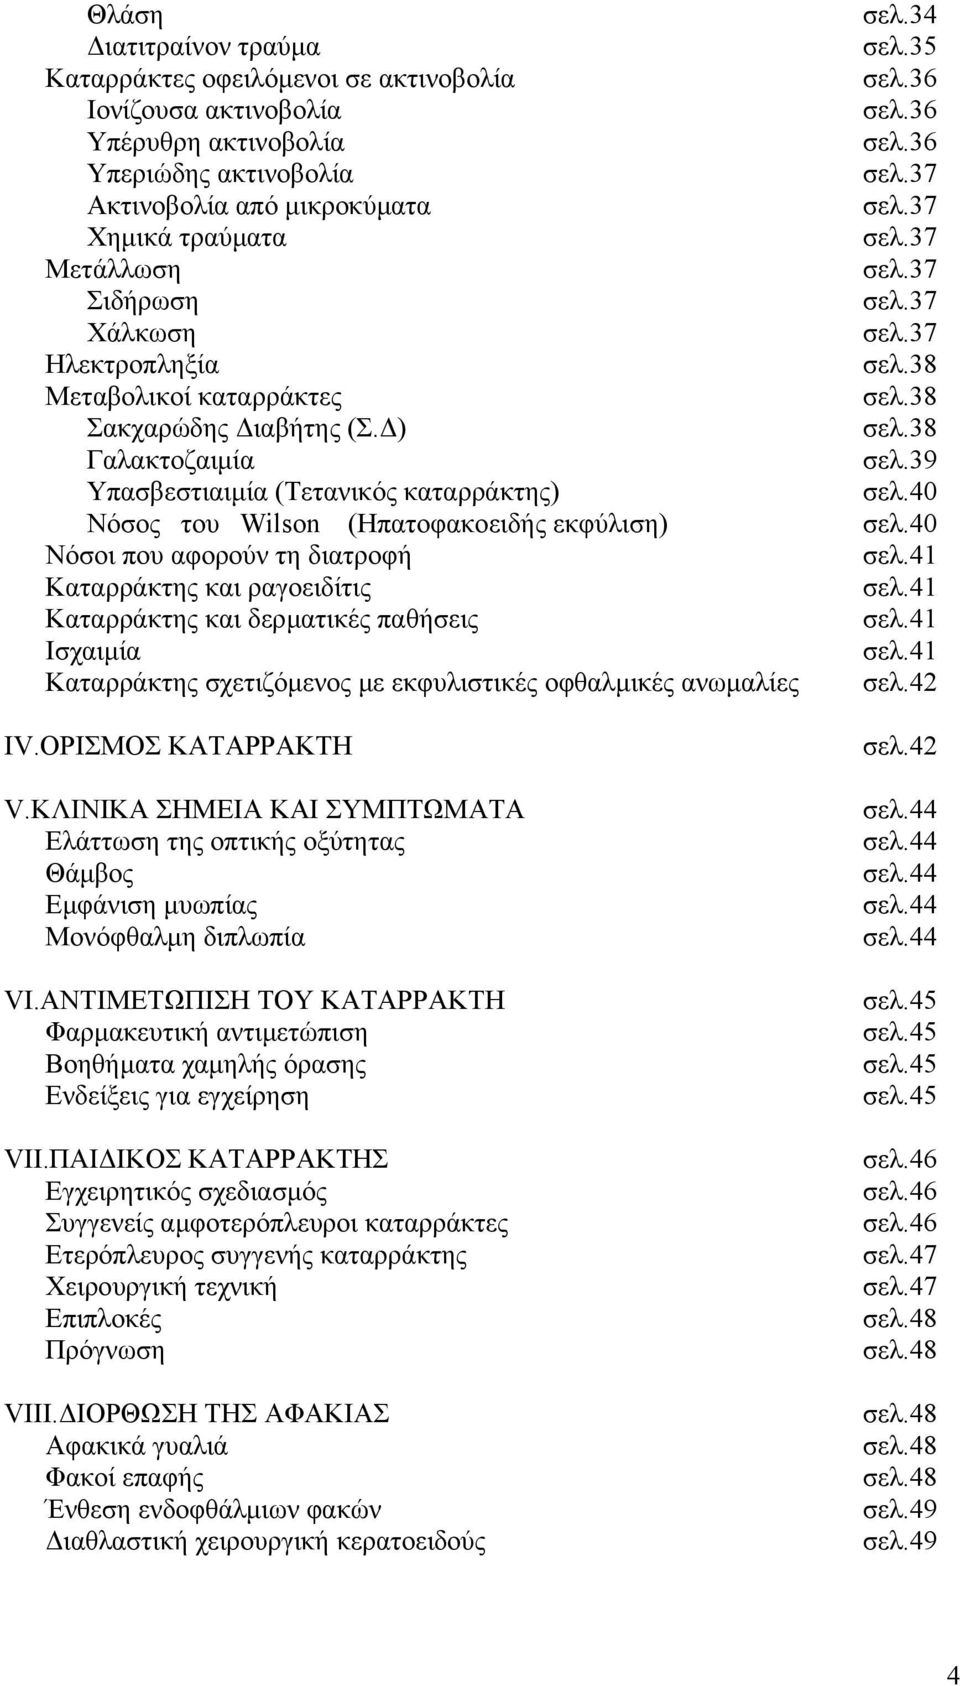 38 Γαλακτοζαιµία σελ.39 Υπασβεστιαιµία (Τετανικός καταρράκτης) σελ.40 Νόσος του Wilson (Ηπατοφακοειδής εκφύλιση) σελ.40 Νόσοι που αφορούν τη διατροφή σελ.41 Καταρράκτης και ραγοειδίτις σελ.